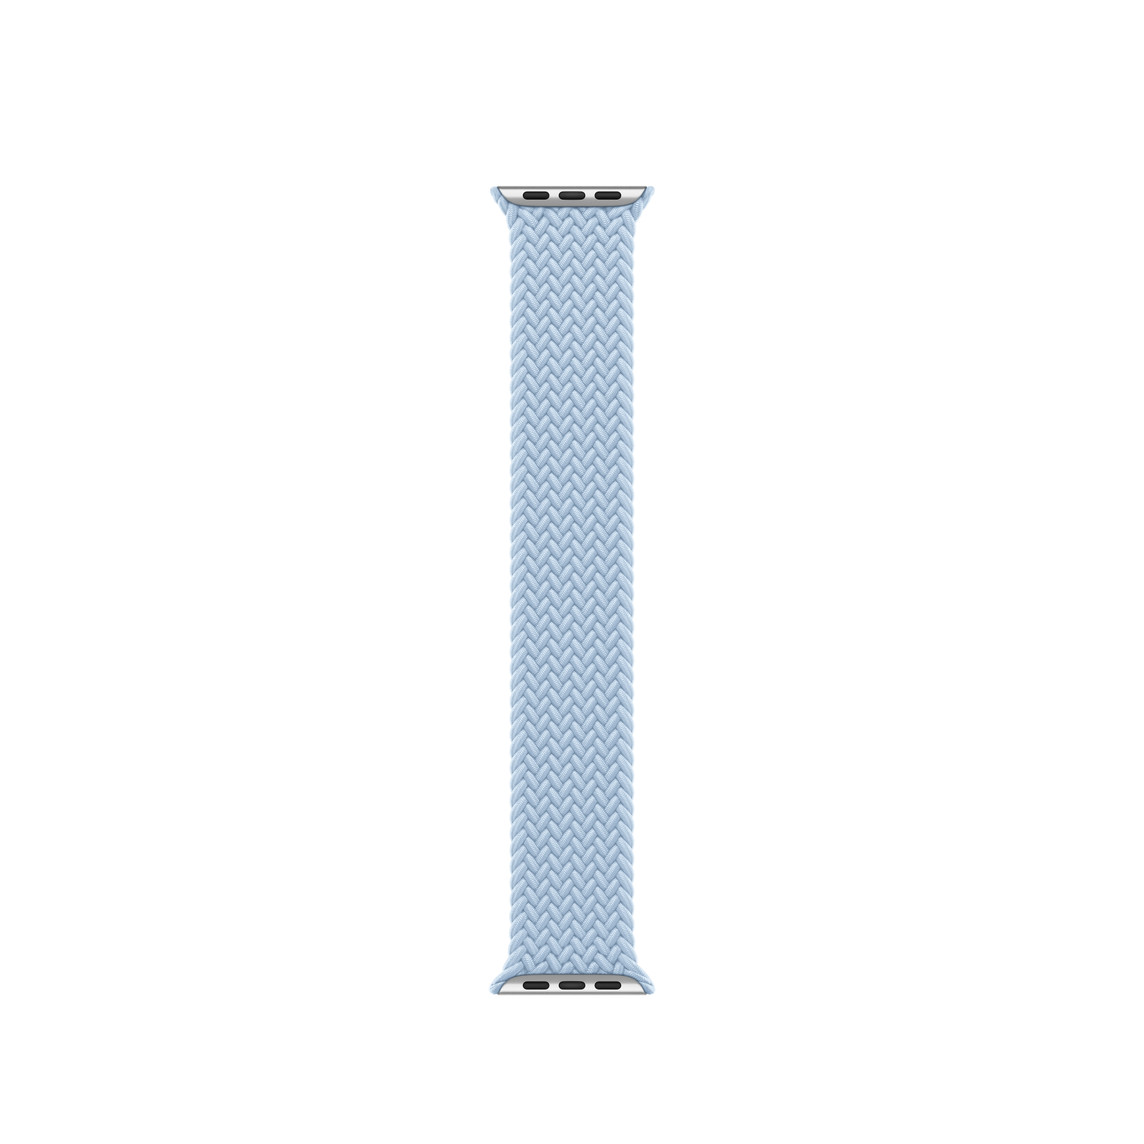 Correa Solo Loop trenzada azul claro de poliéster trenzado con hilos de silicona sin cierres ni hebillas